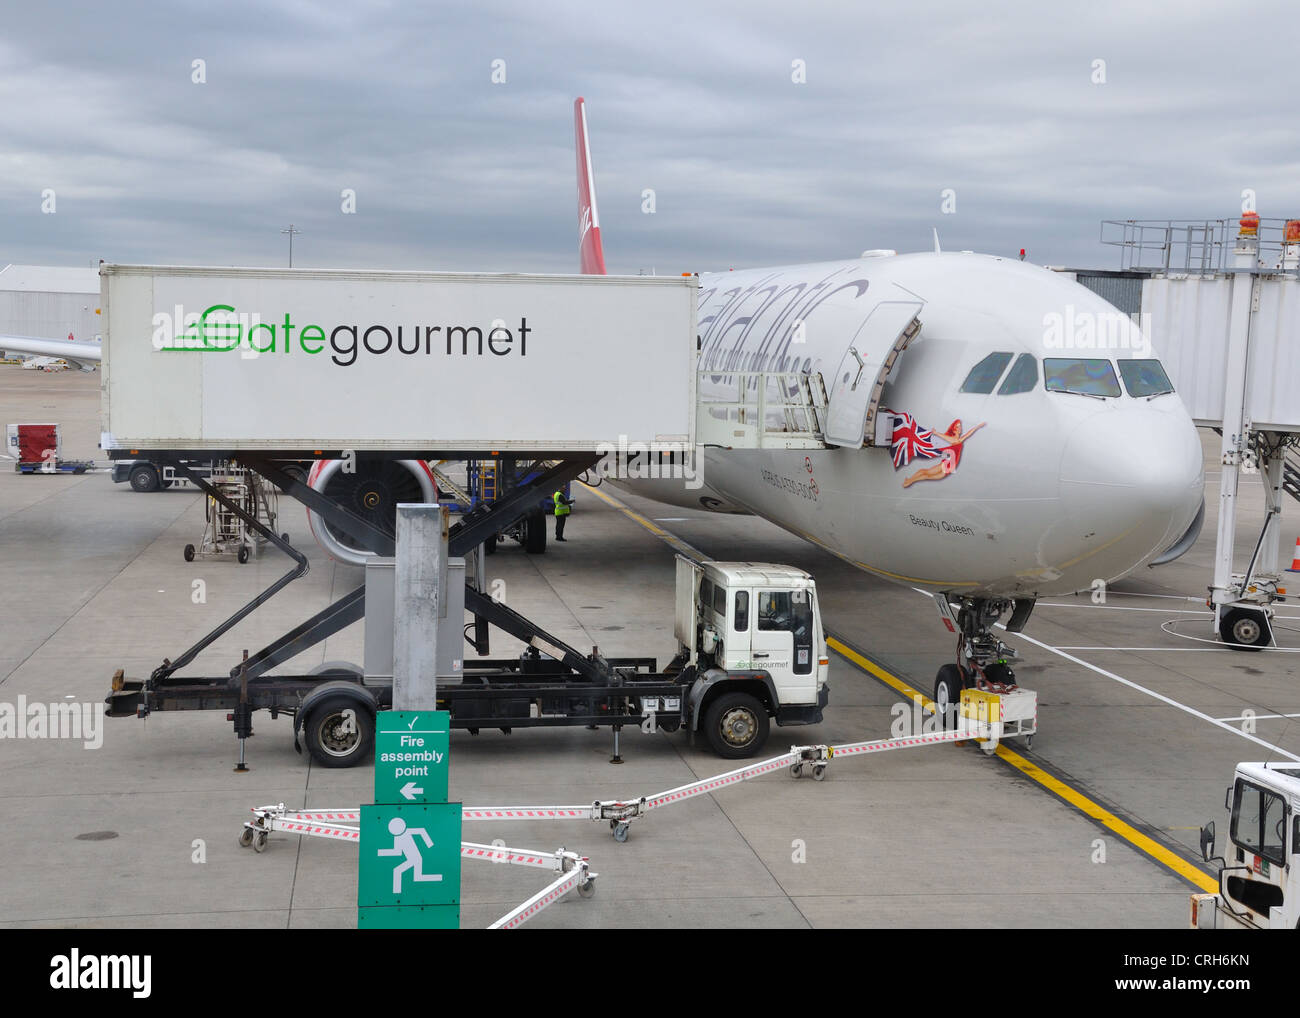 Un avion Virgin Atlantic reçoit les services de Gate gourmet à l'aéroport de Glasgow. Banque D'Images